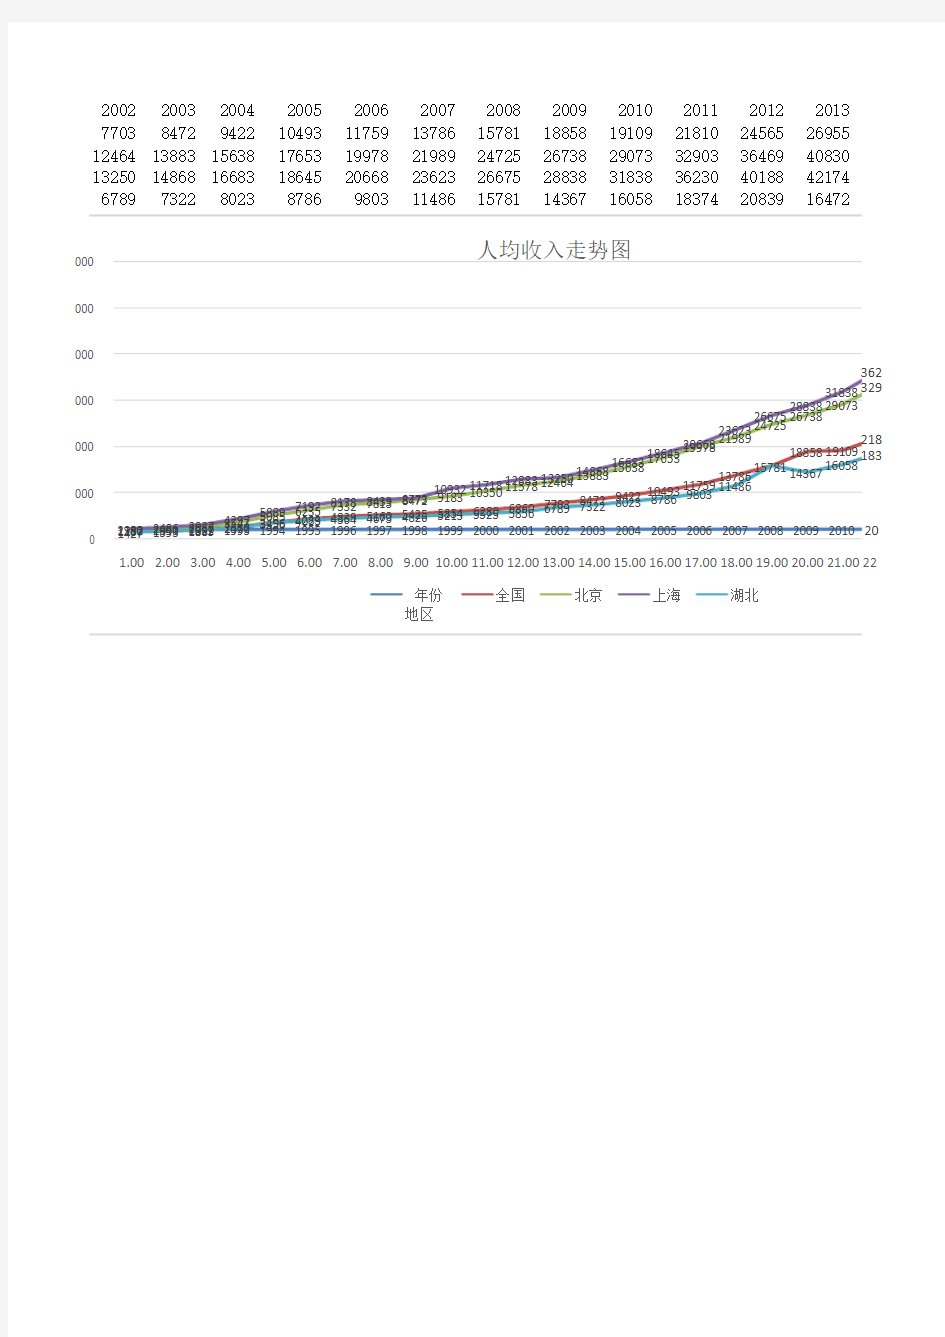 人均可支配收入1990-2015